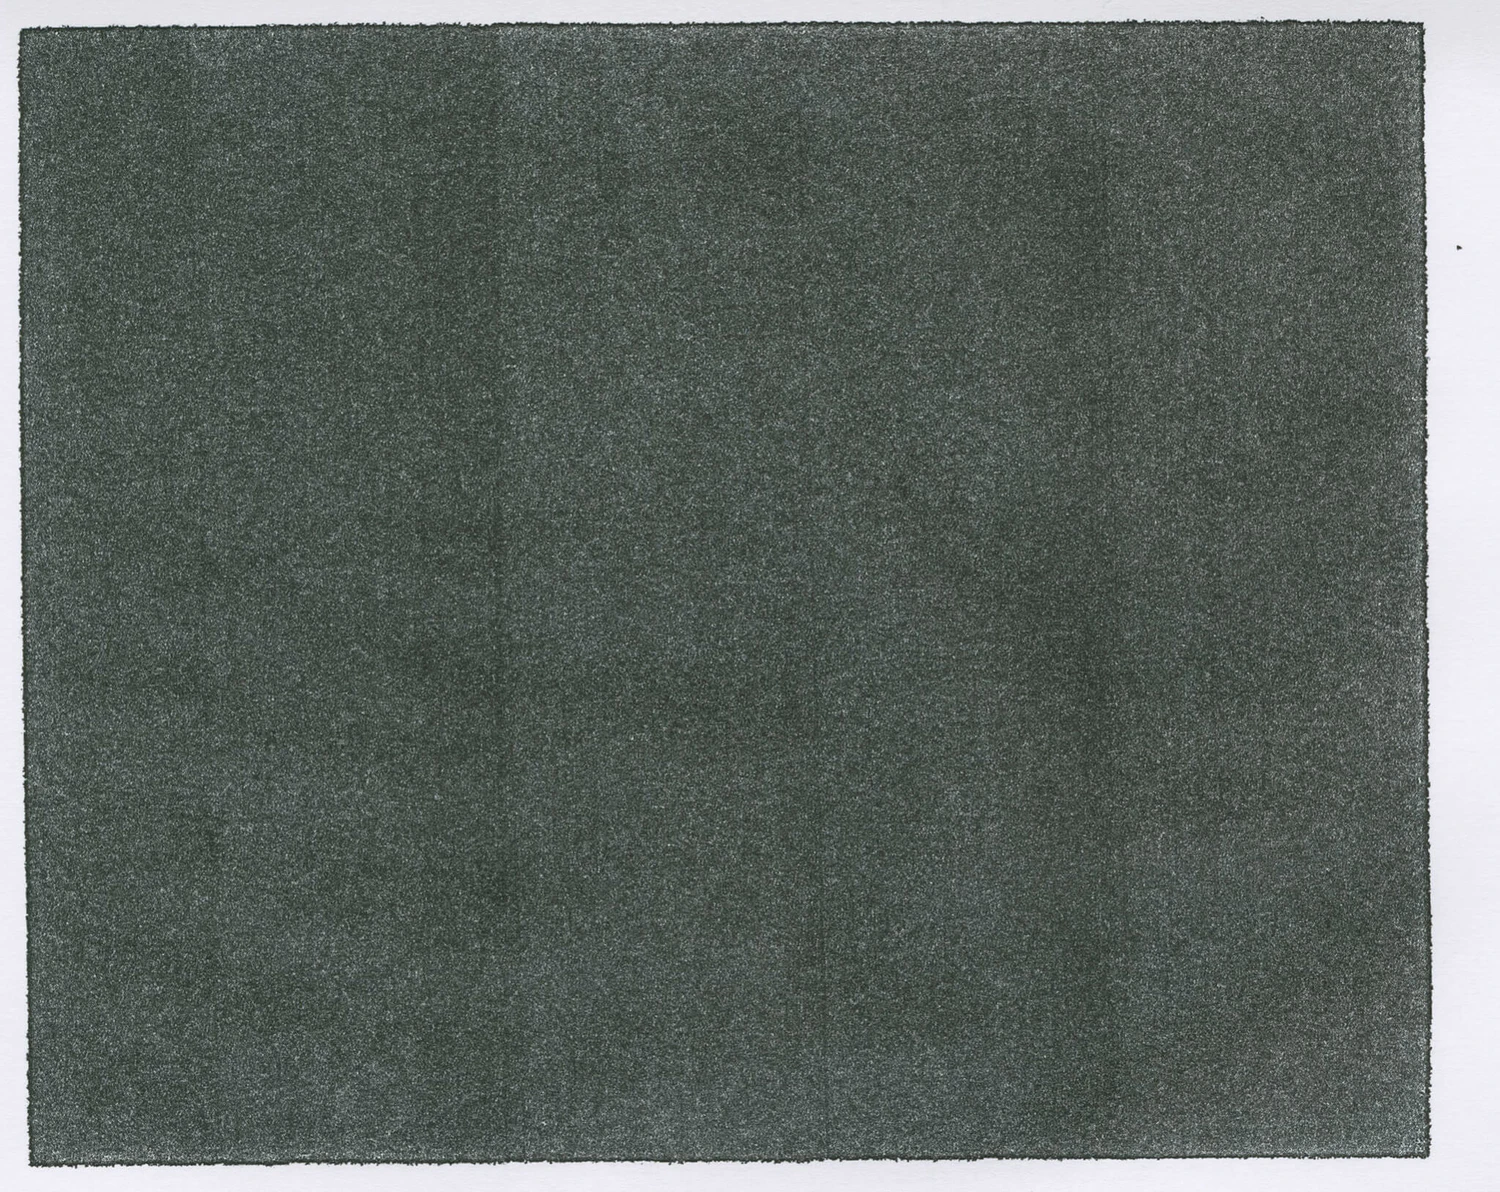 1931 29款做旧质感纸张背景叠加高清背景素材 Copyscan Textures